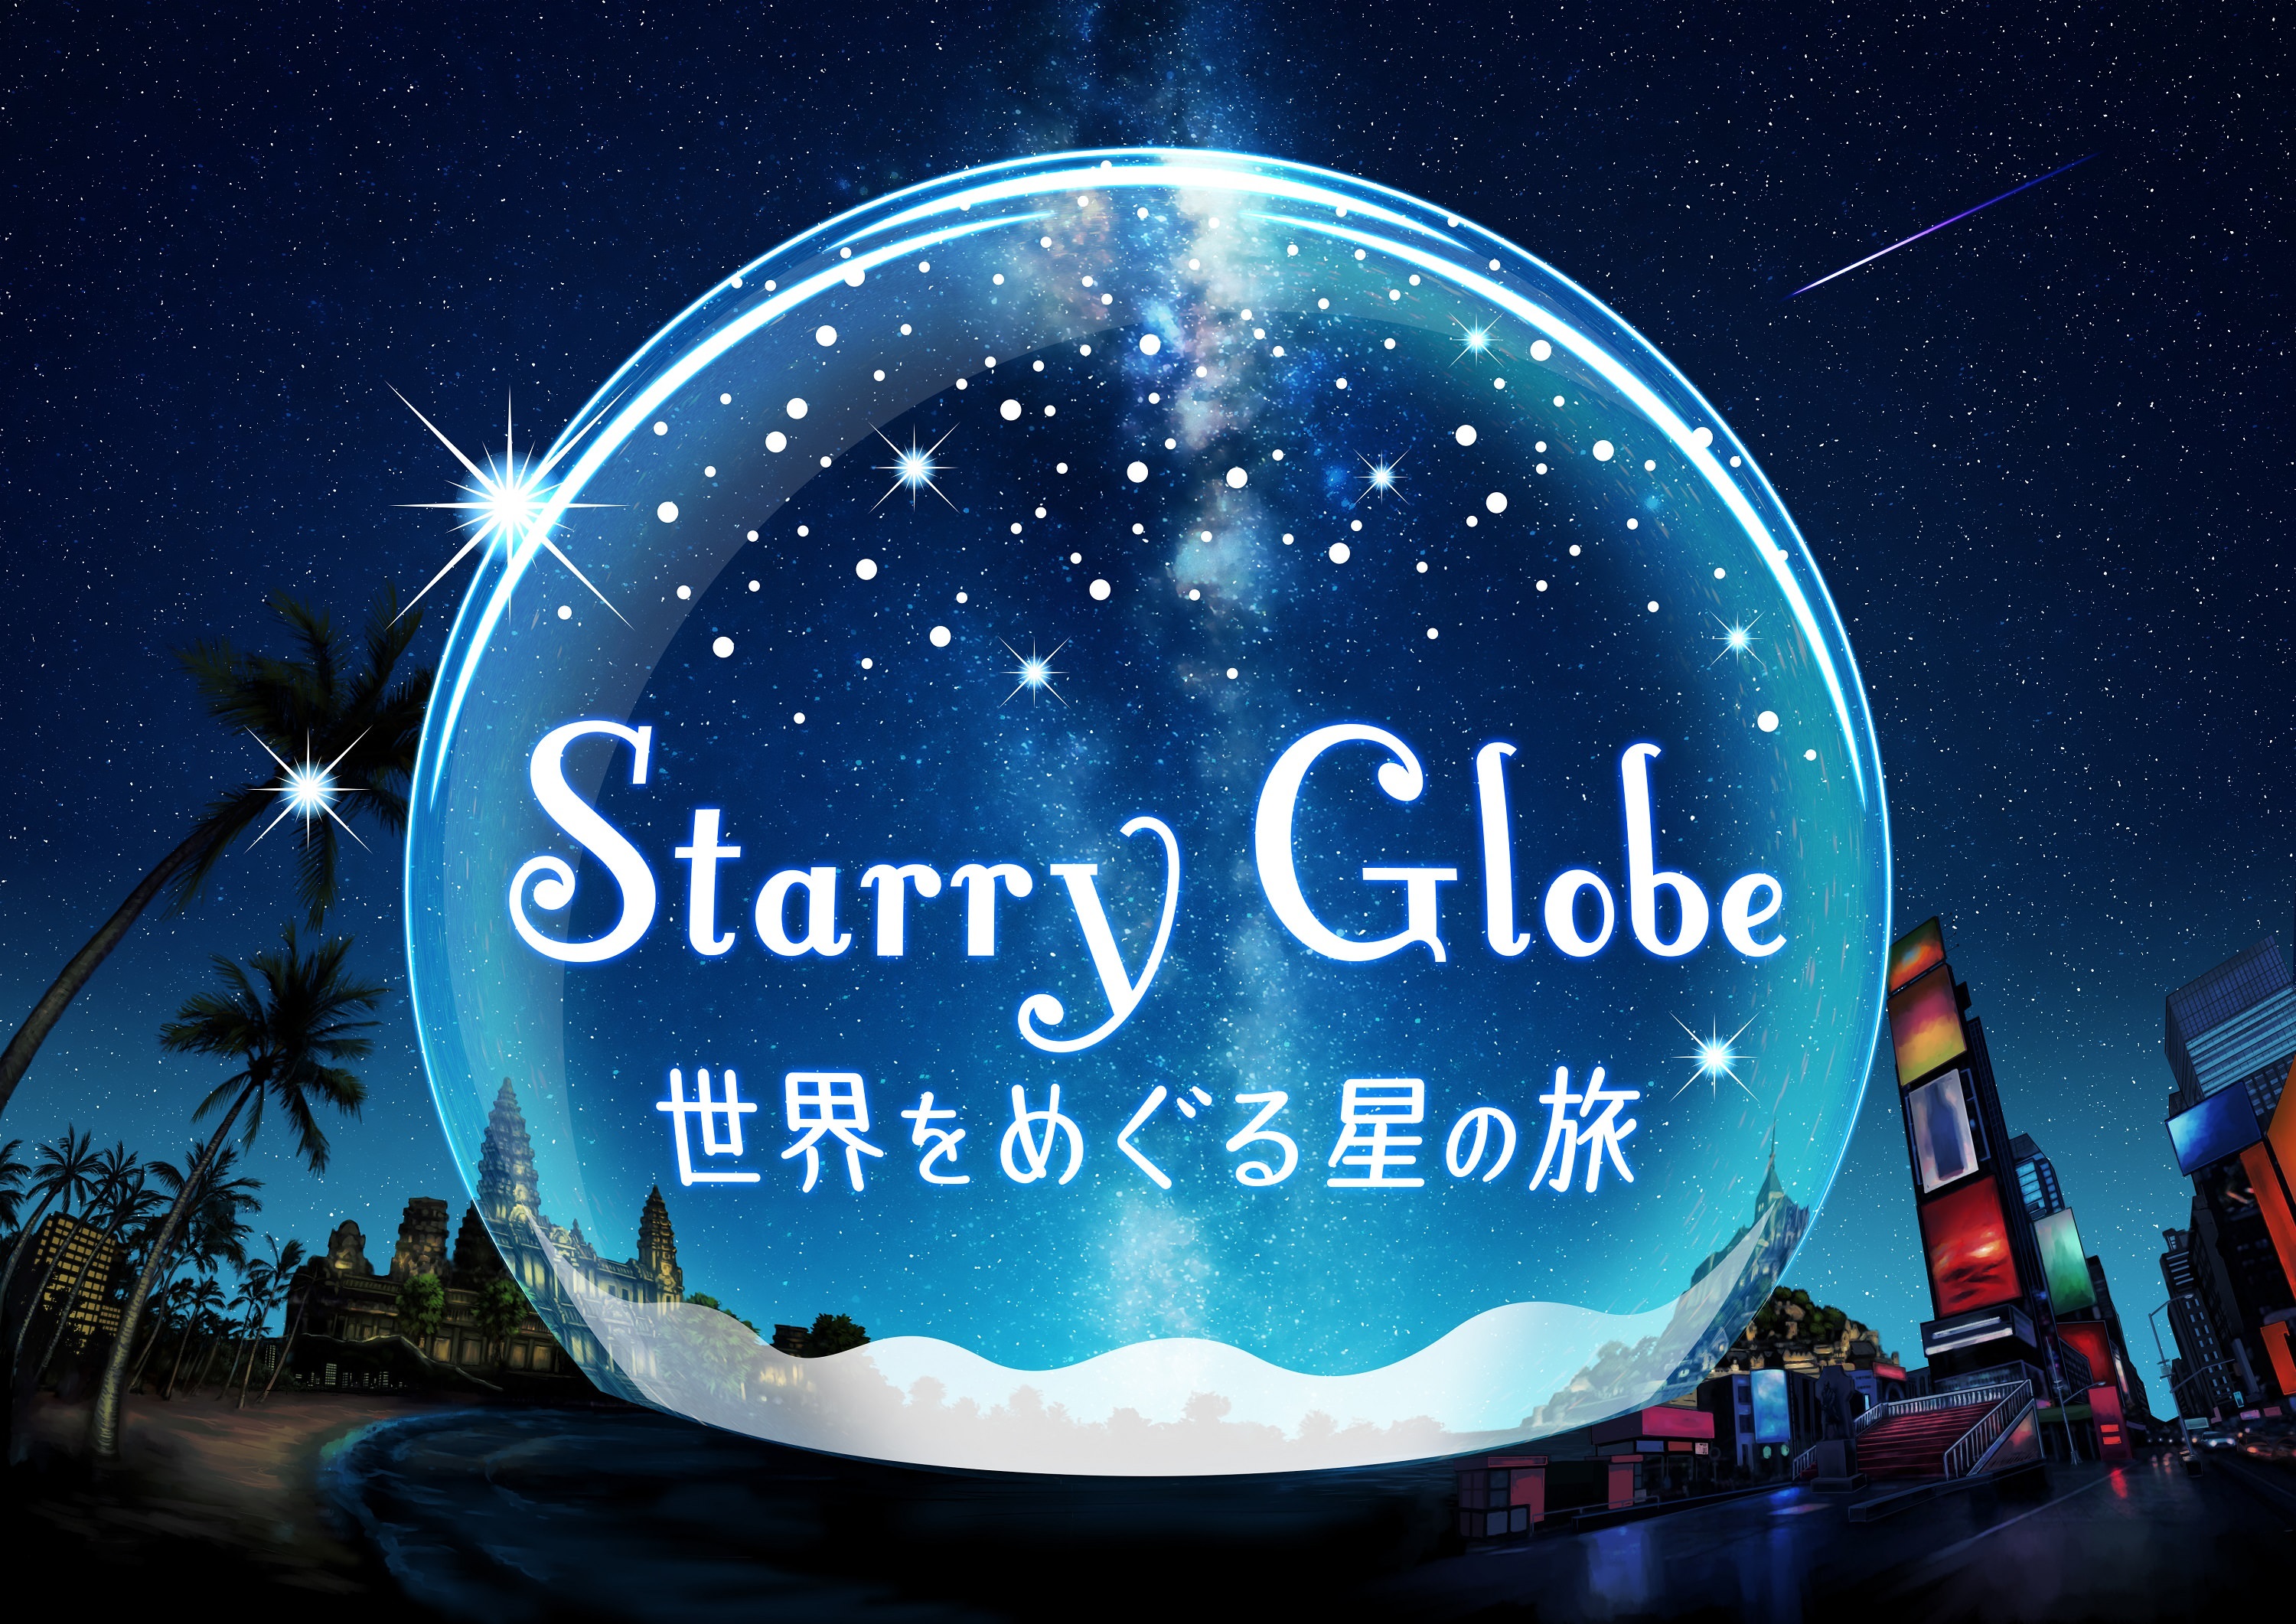 梶裕貴さんプロデュース！旅するプラネタリウム
「Starry Globe 世界をめぐる星の旅」
2020年7月17日(金)より上映決定